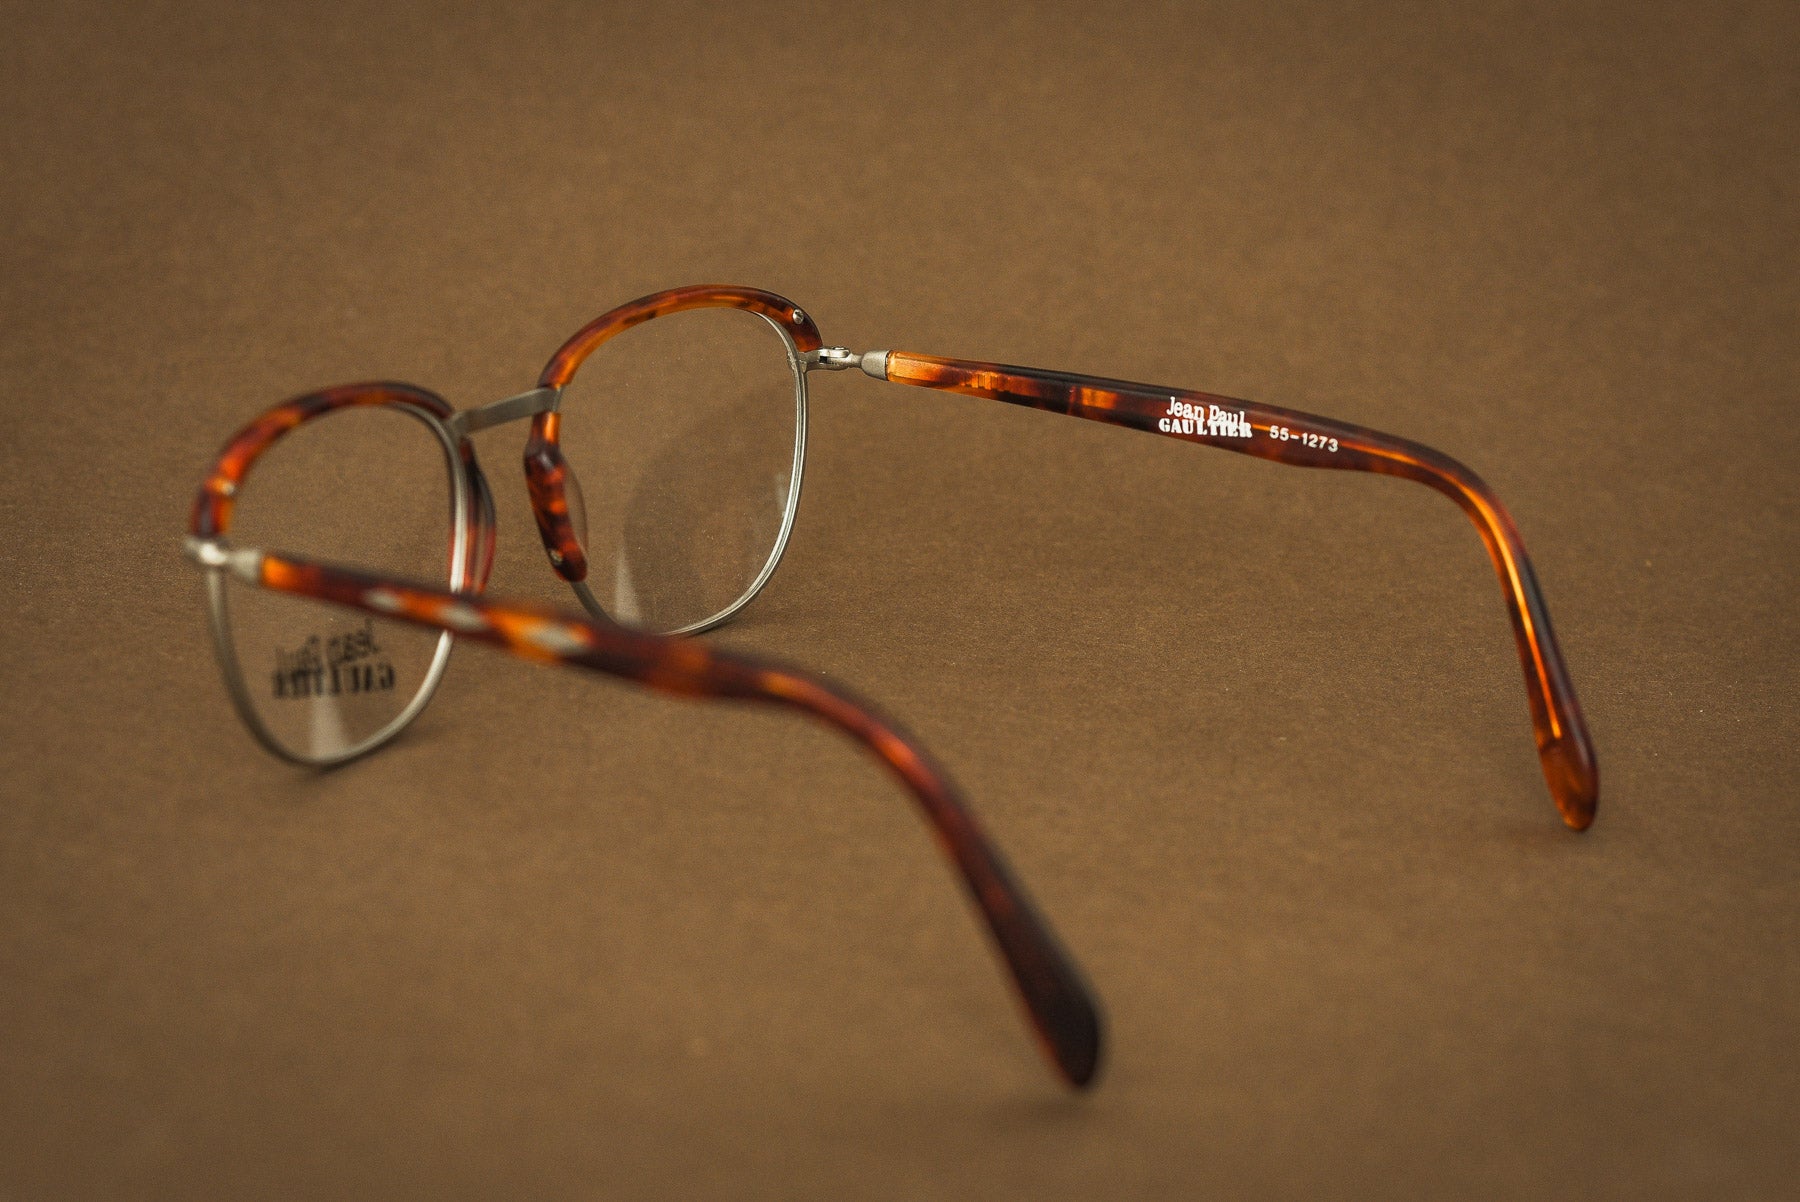 Jean Paul Gaultier 55 1273 glasses